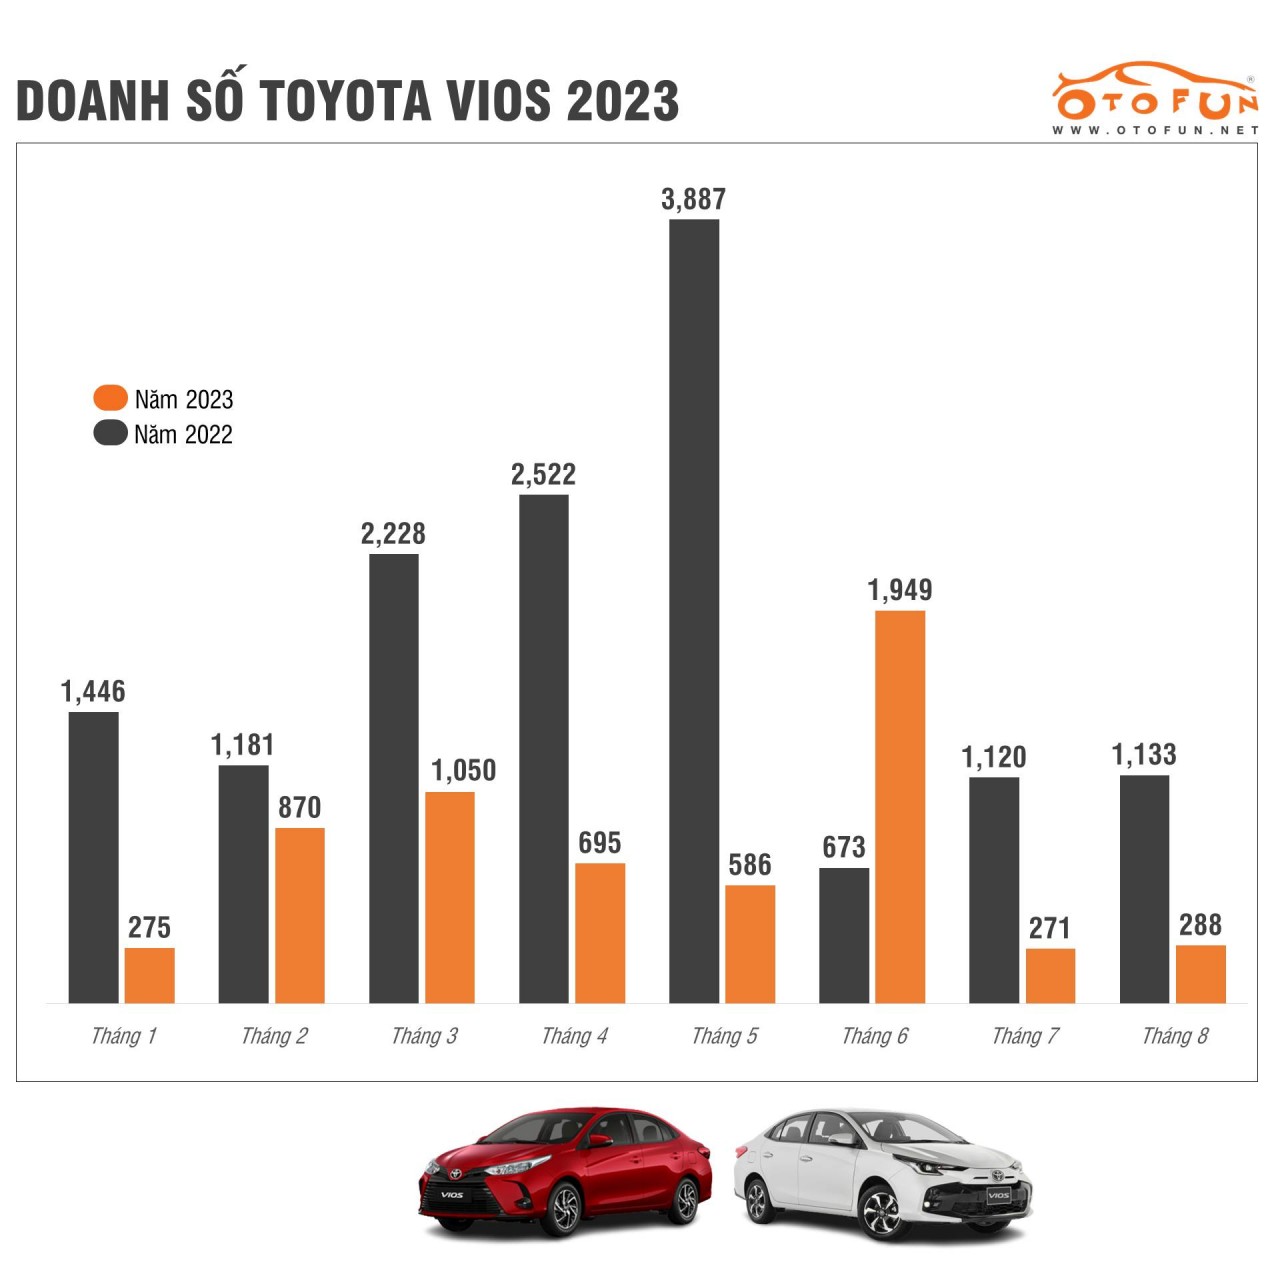 Doanh số Toyota Vios thấp kỷ lục ở mức khó tin, dưới cả Mitsubishi Attrage